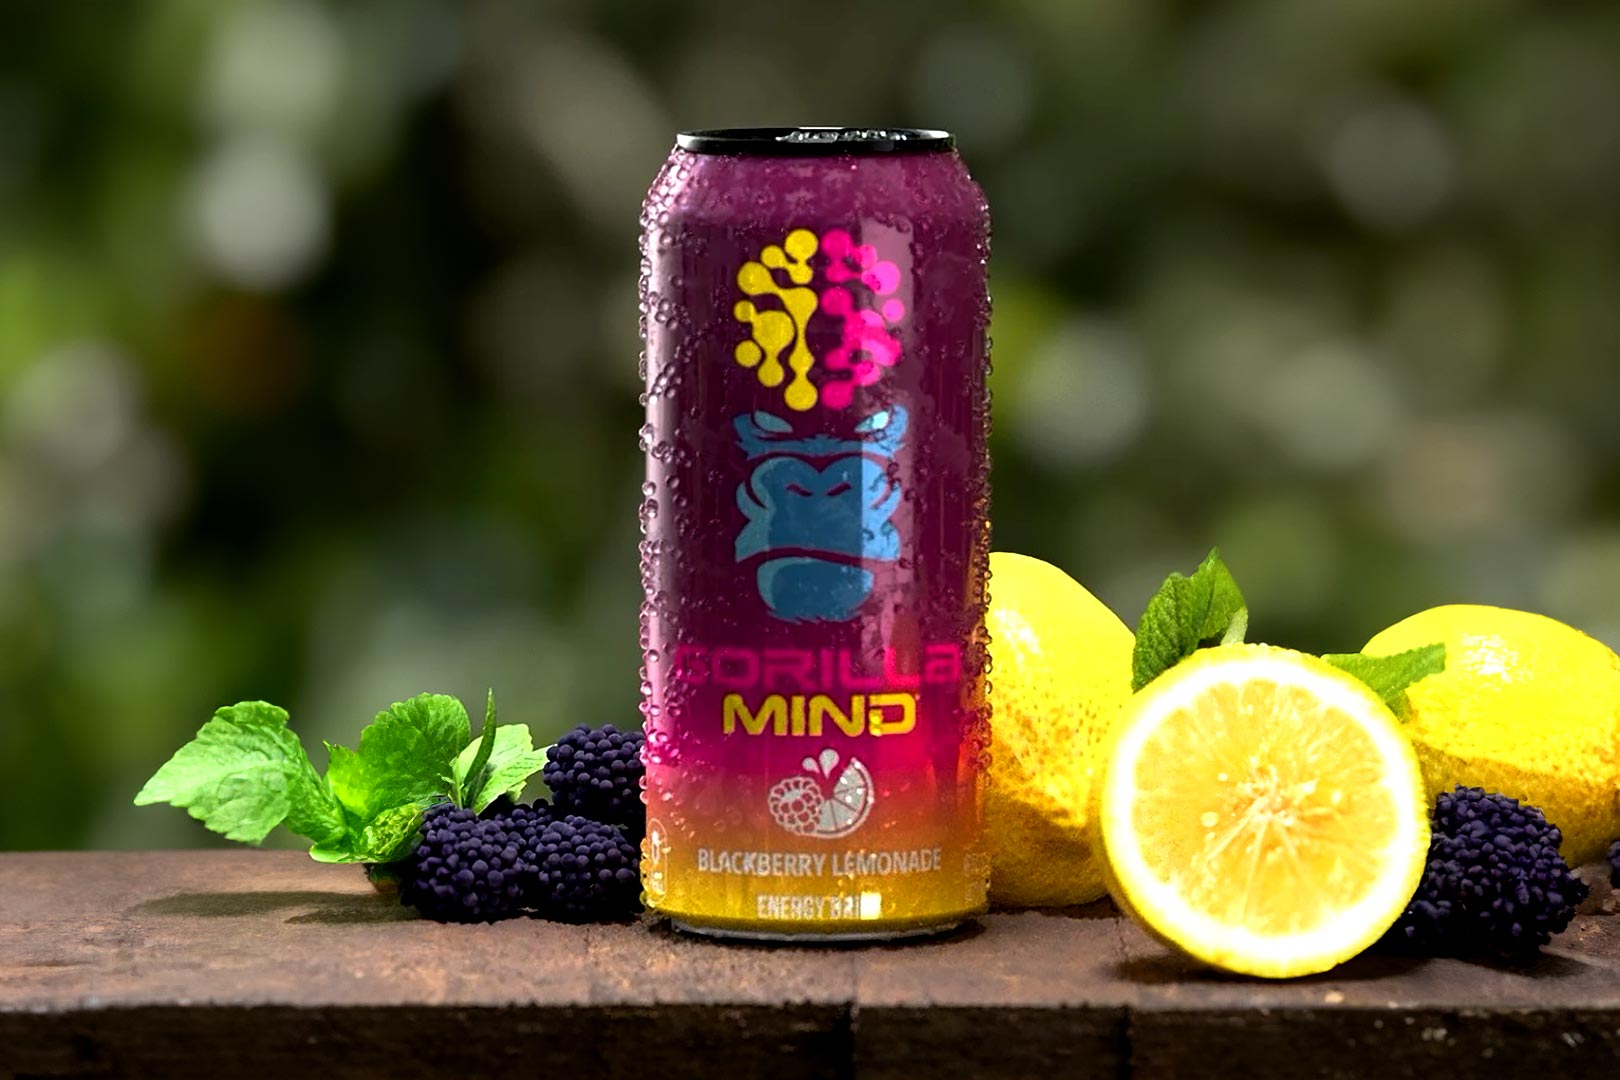 Where To Buy Blackberry Lemonade Gorilla Mind Energy Drink